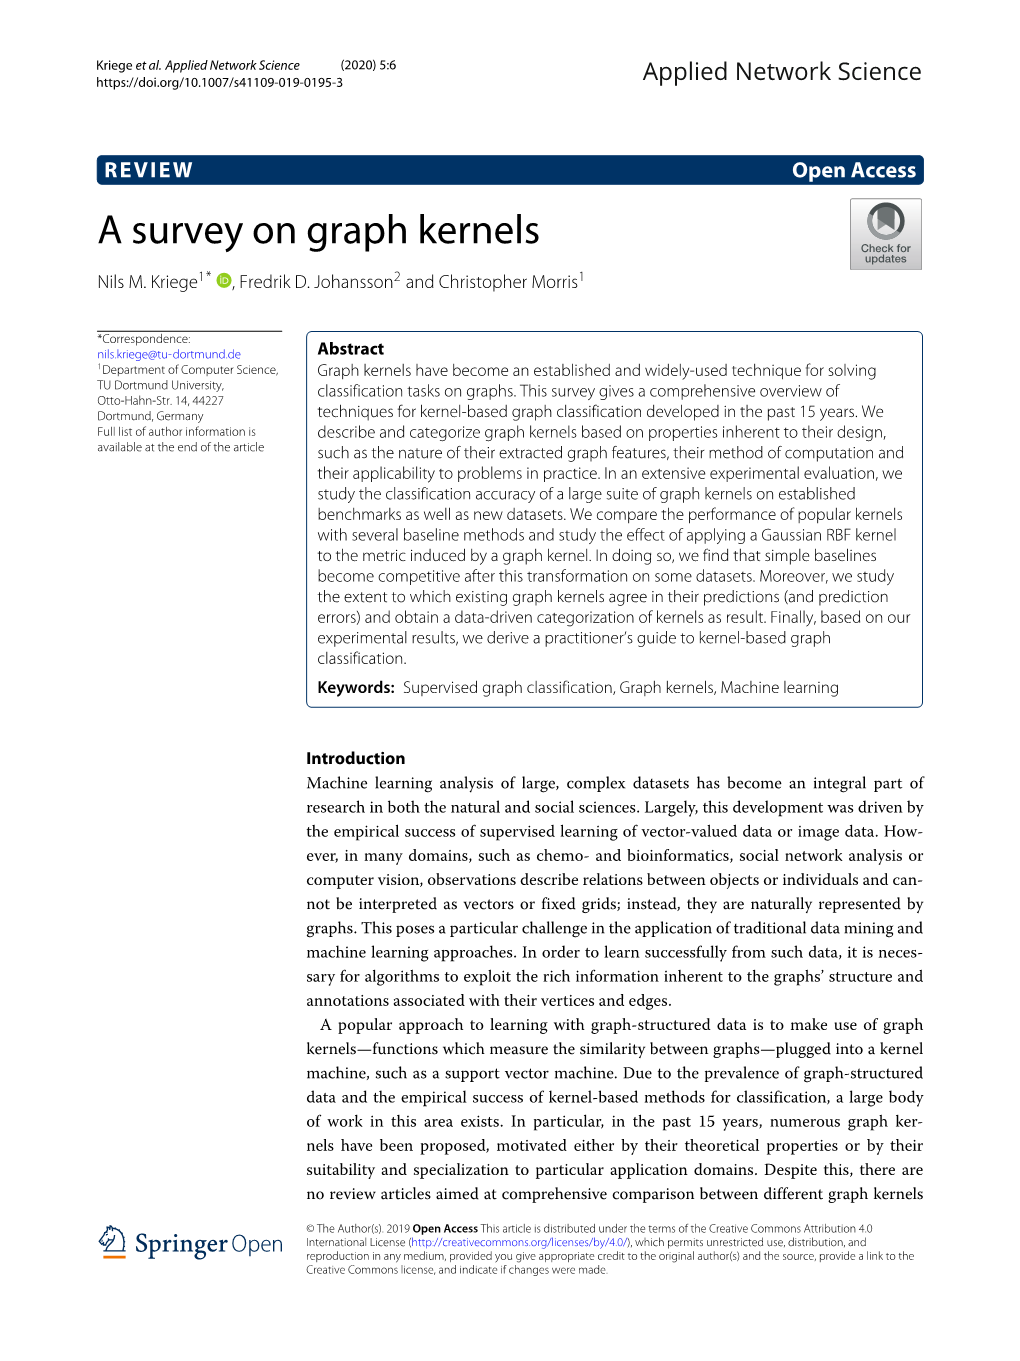 A Survey on Graph Kernels